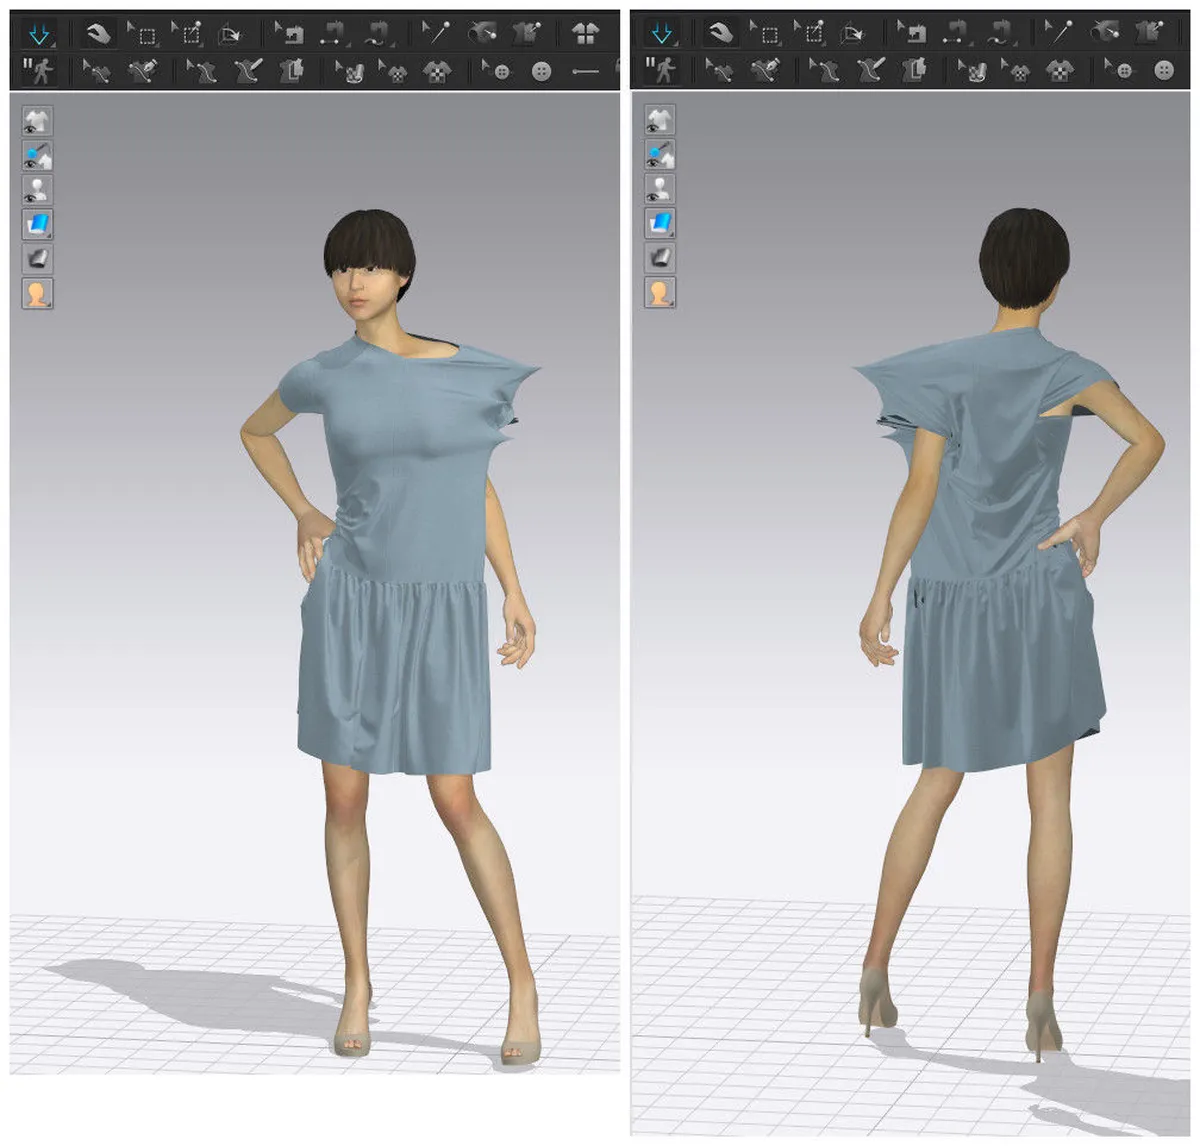 CLO 3D Fashion Review